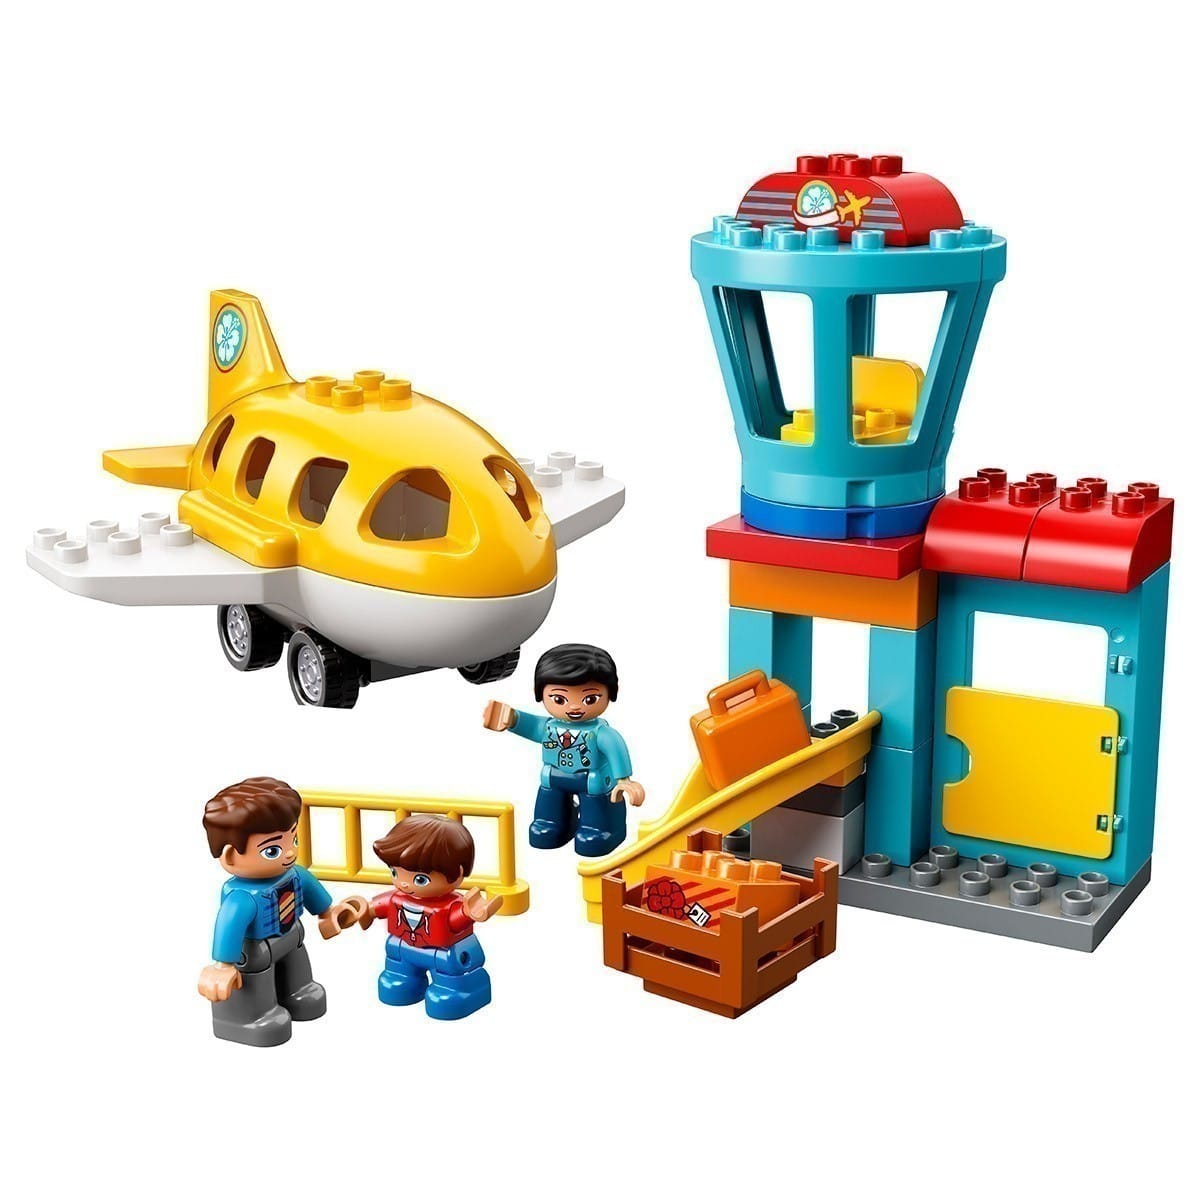 LEGO® DUPLO® 10871 - Airport